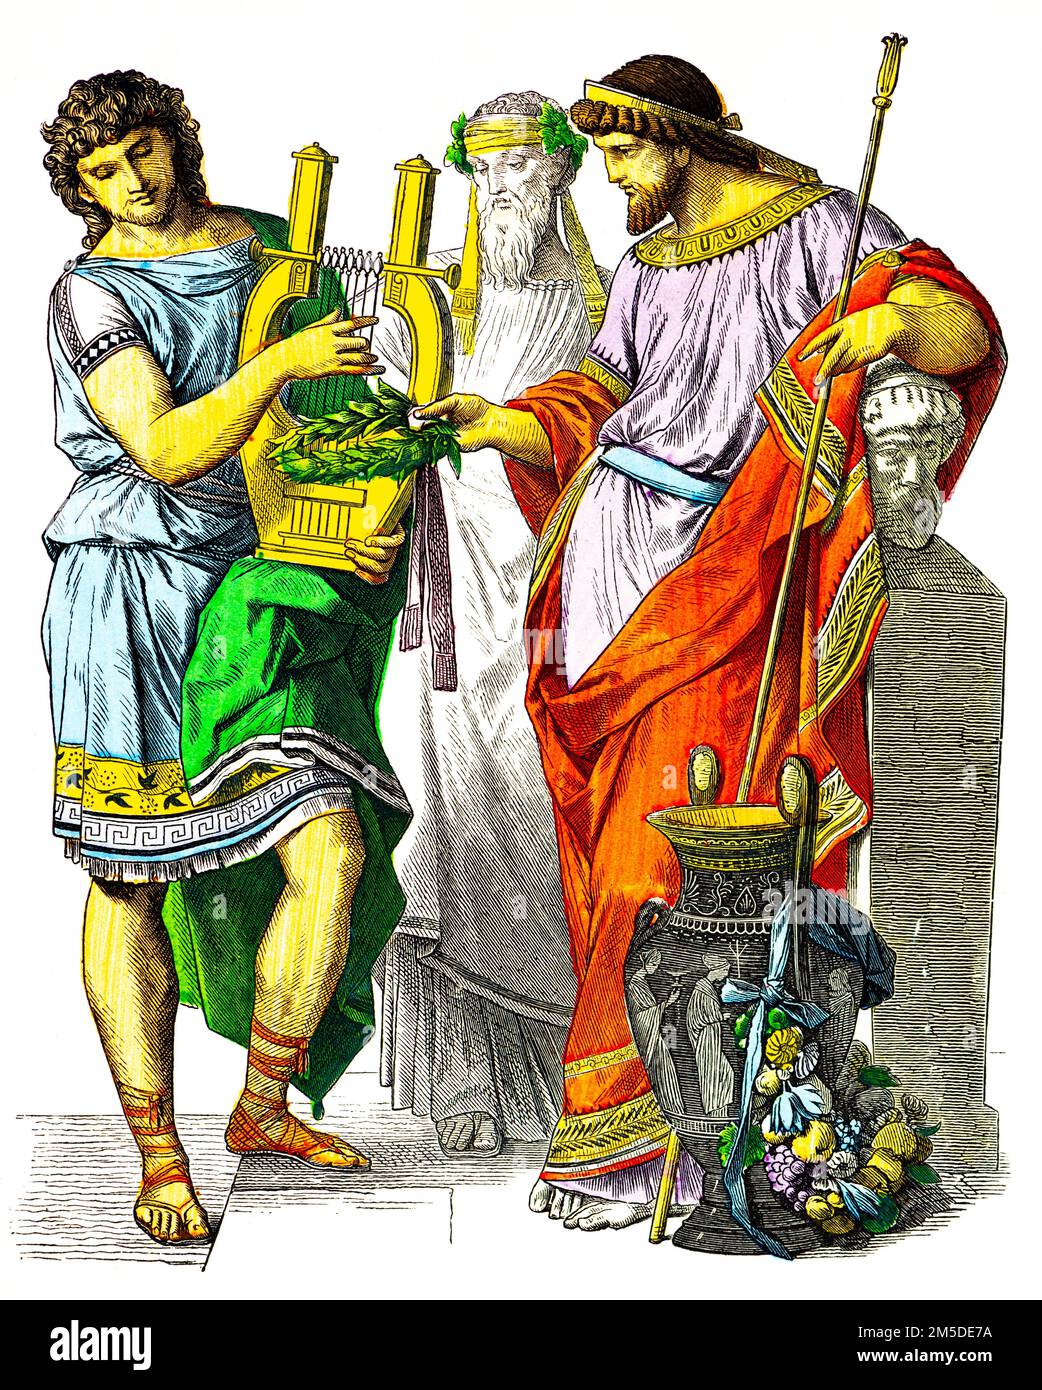 Historische Kostüme des Griechen der Antike, farbige historische Illustration, Münchener Bilderbogen, München 1890 Stockfoto